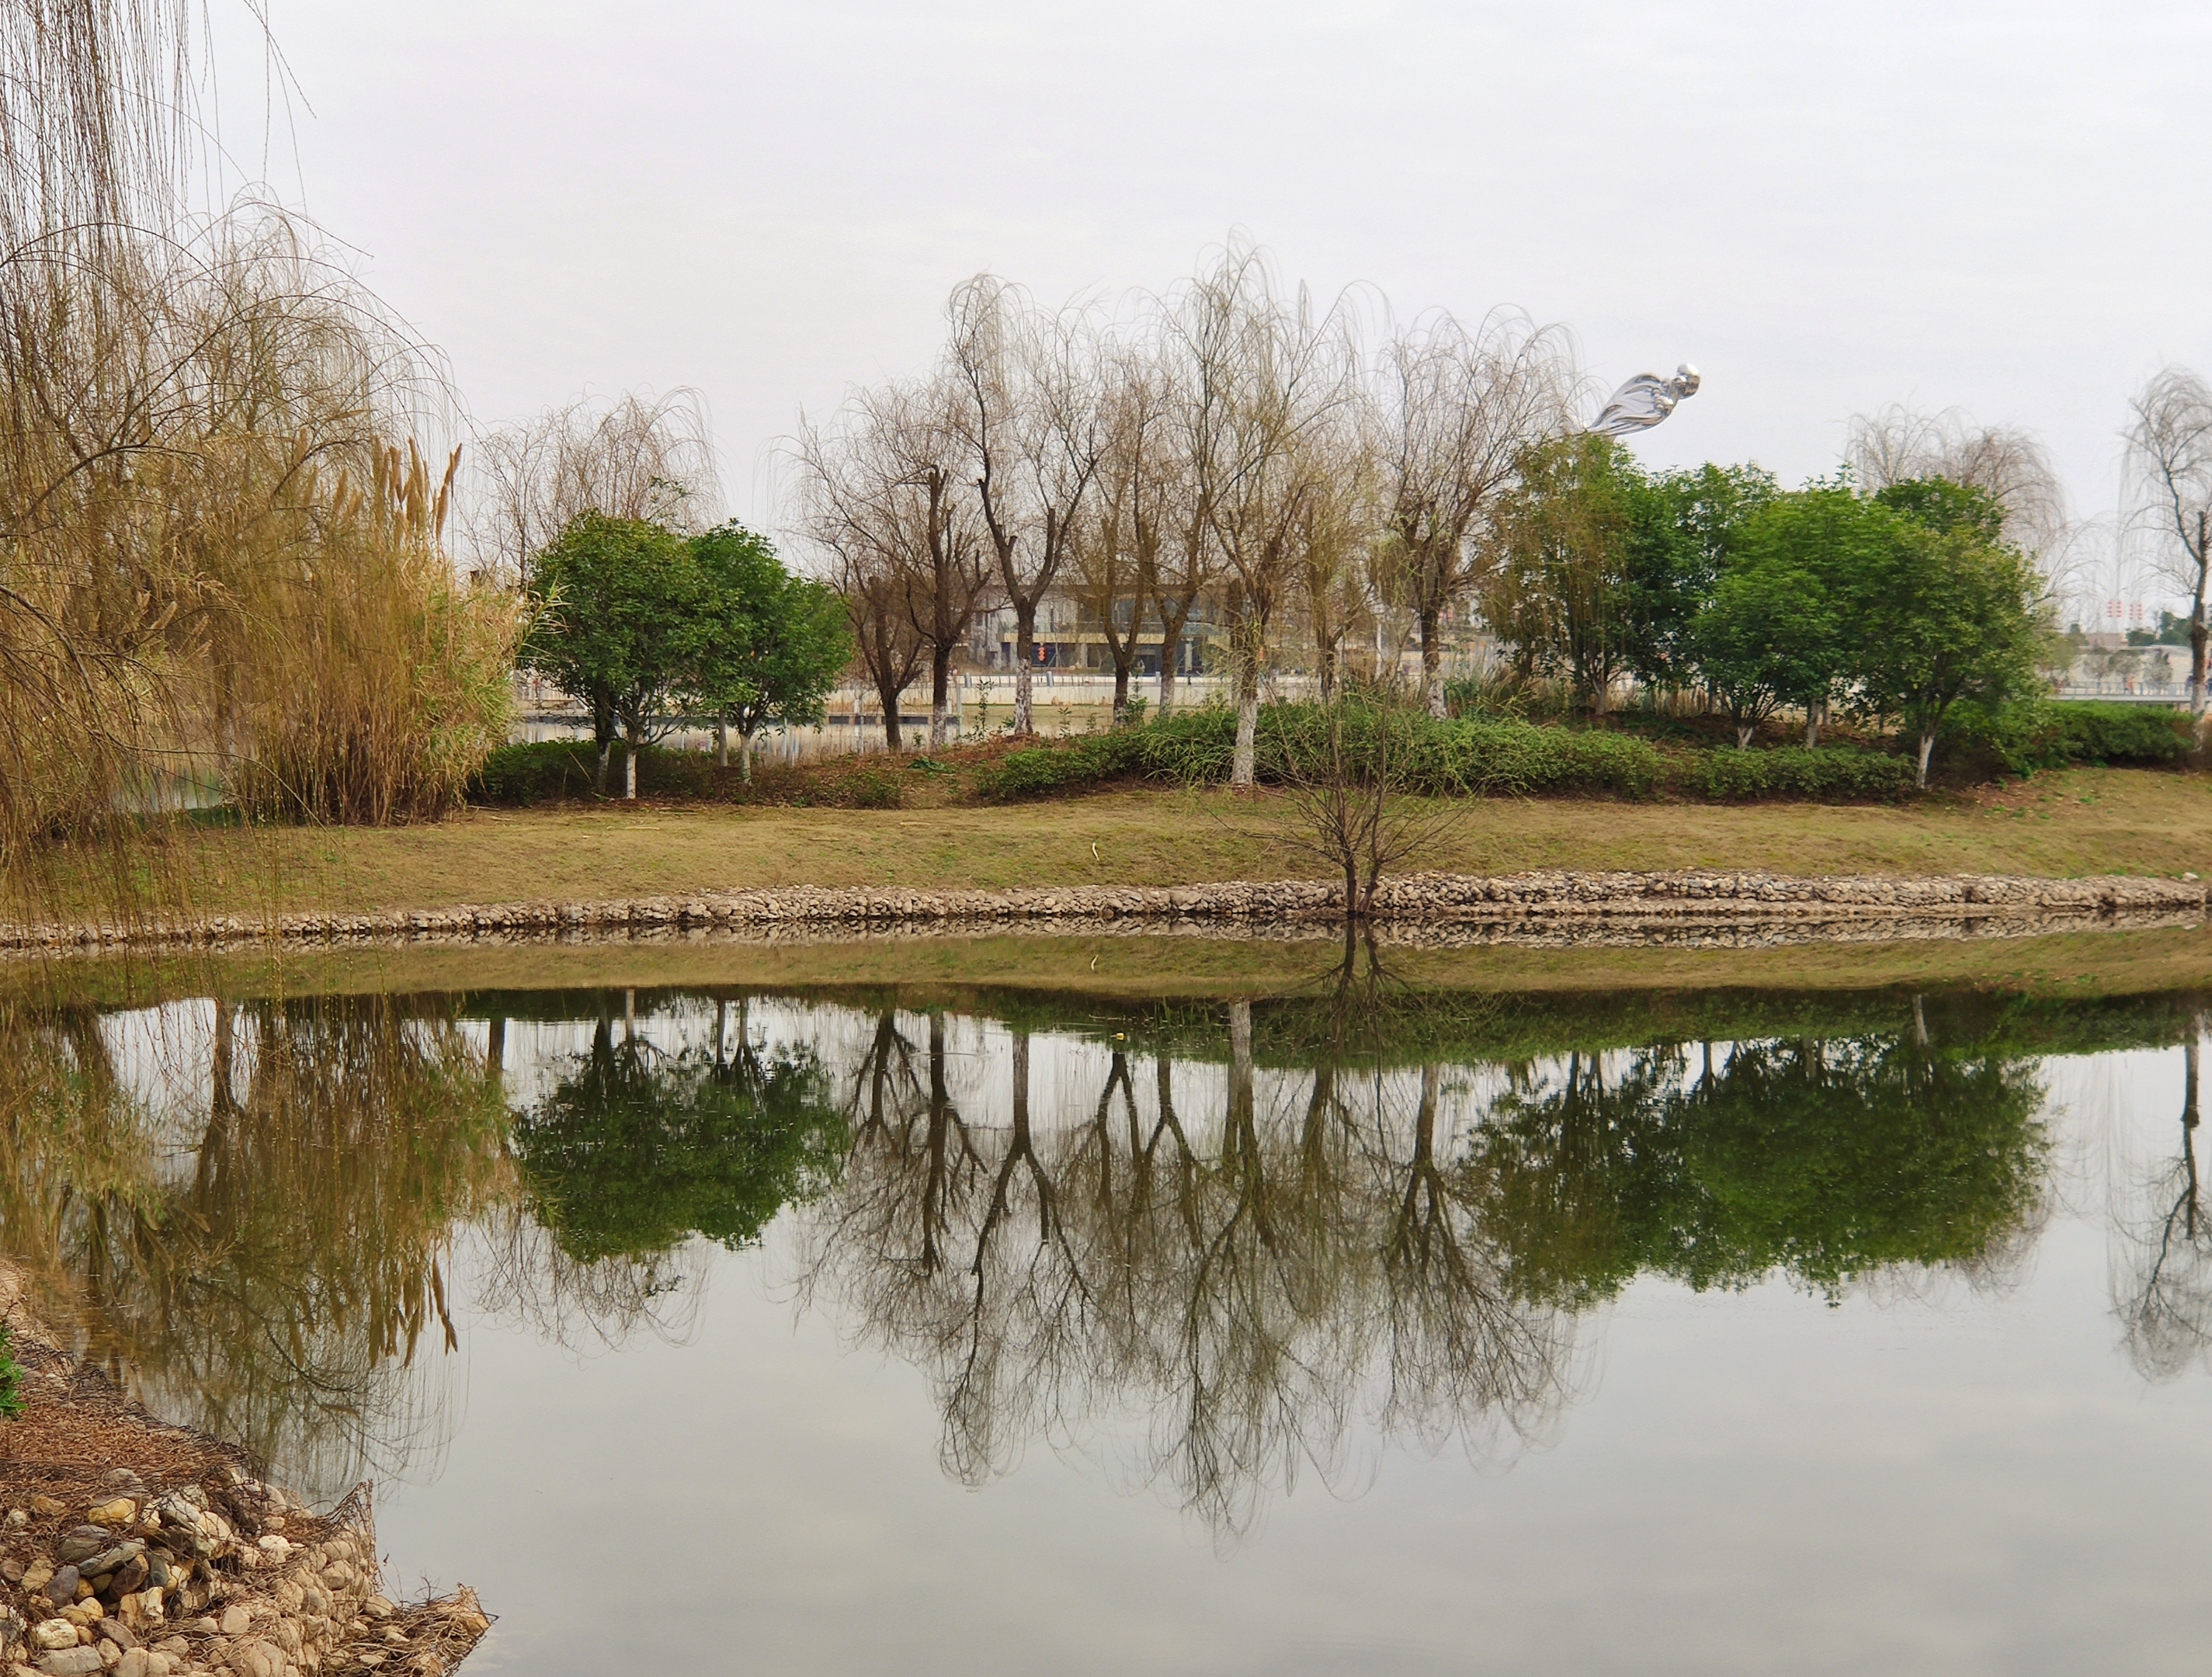 天气晴朗,我和家人来到南昌市九龙湖湿地公园游玩